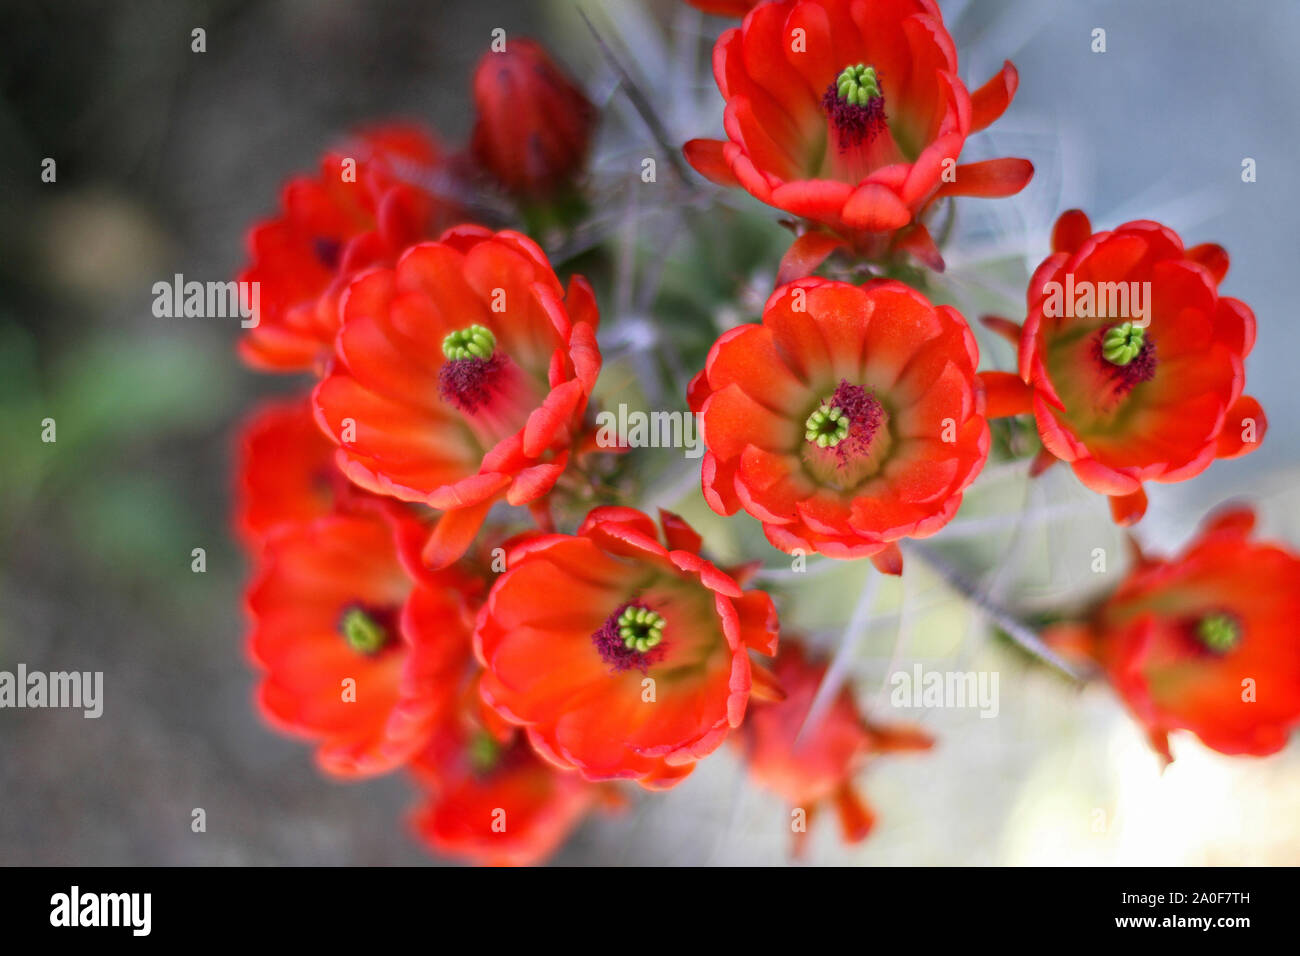 Red fioriture dei fiori sul riccio cactus nel deserto closeup. Kingcup o claretcup cactus (echinocereus triglochidiatus). Foto Stock